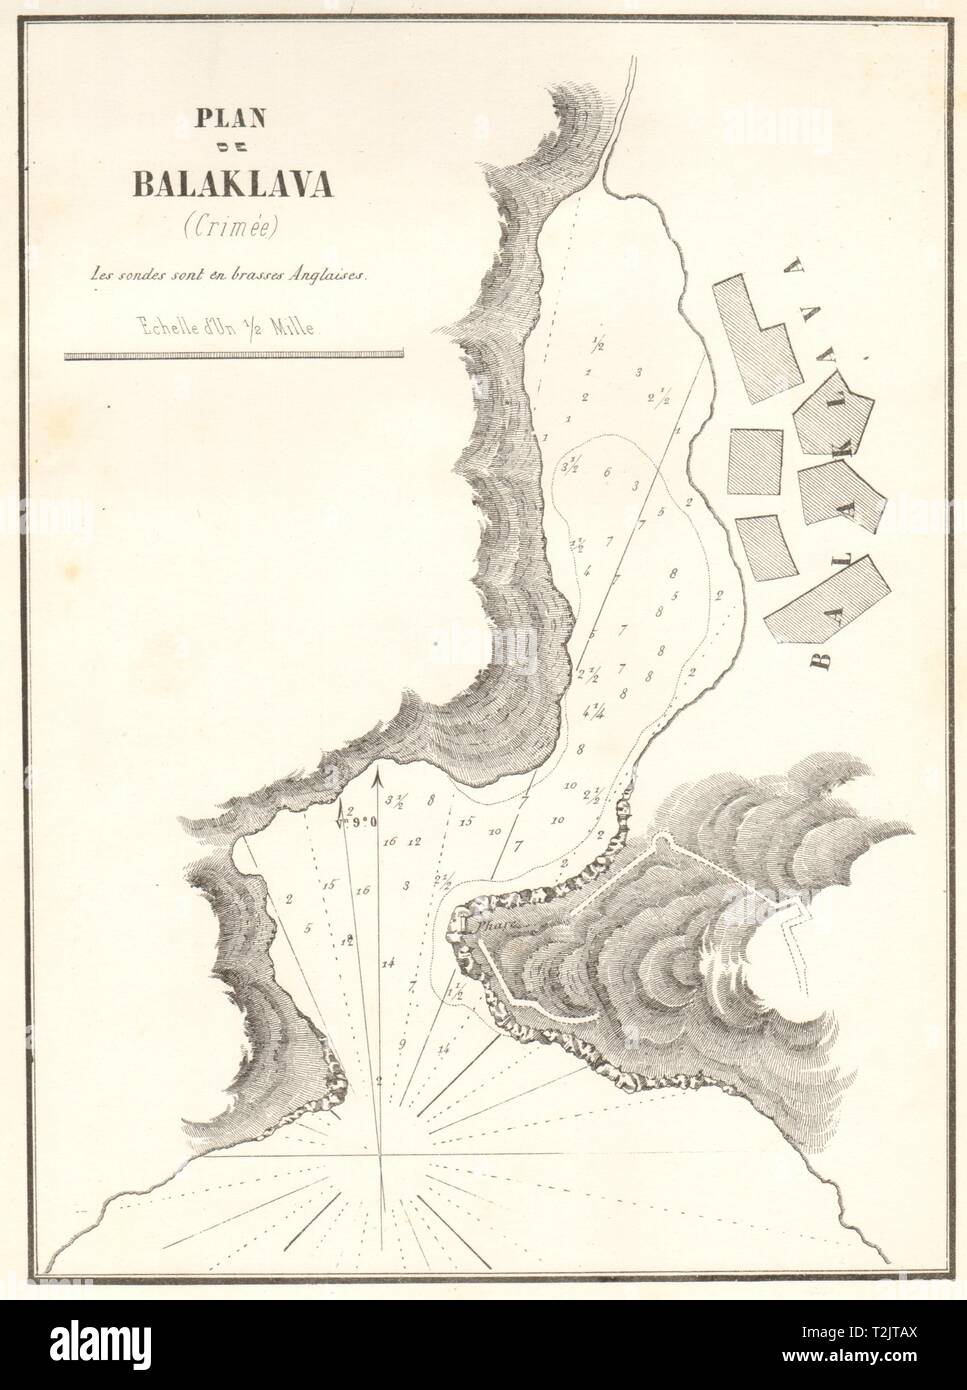 Plan de Balaklava (Crimée). Russie Ukraine Crimée. GAUTTIER 1854 carte ancienne Banque D'Images